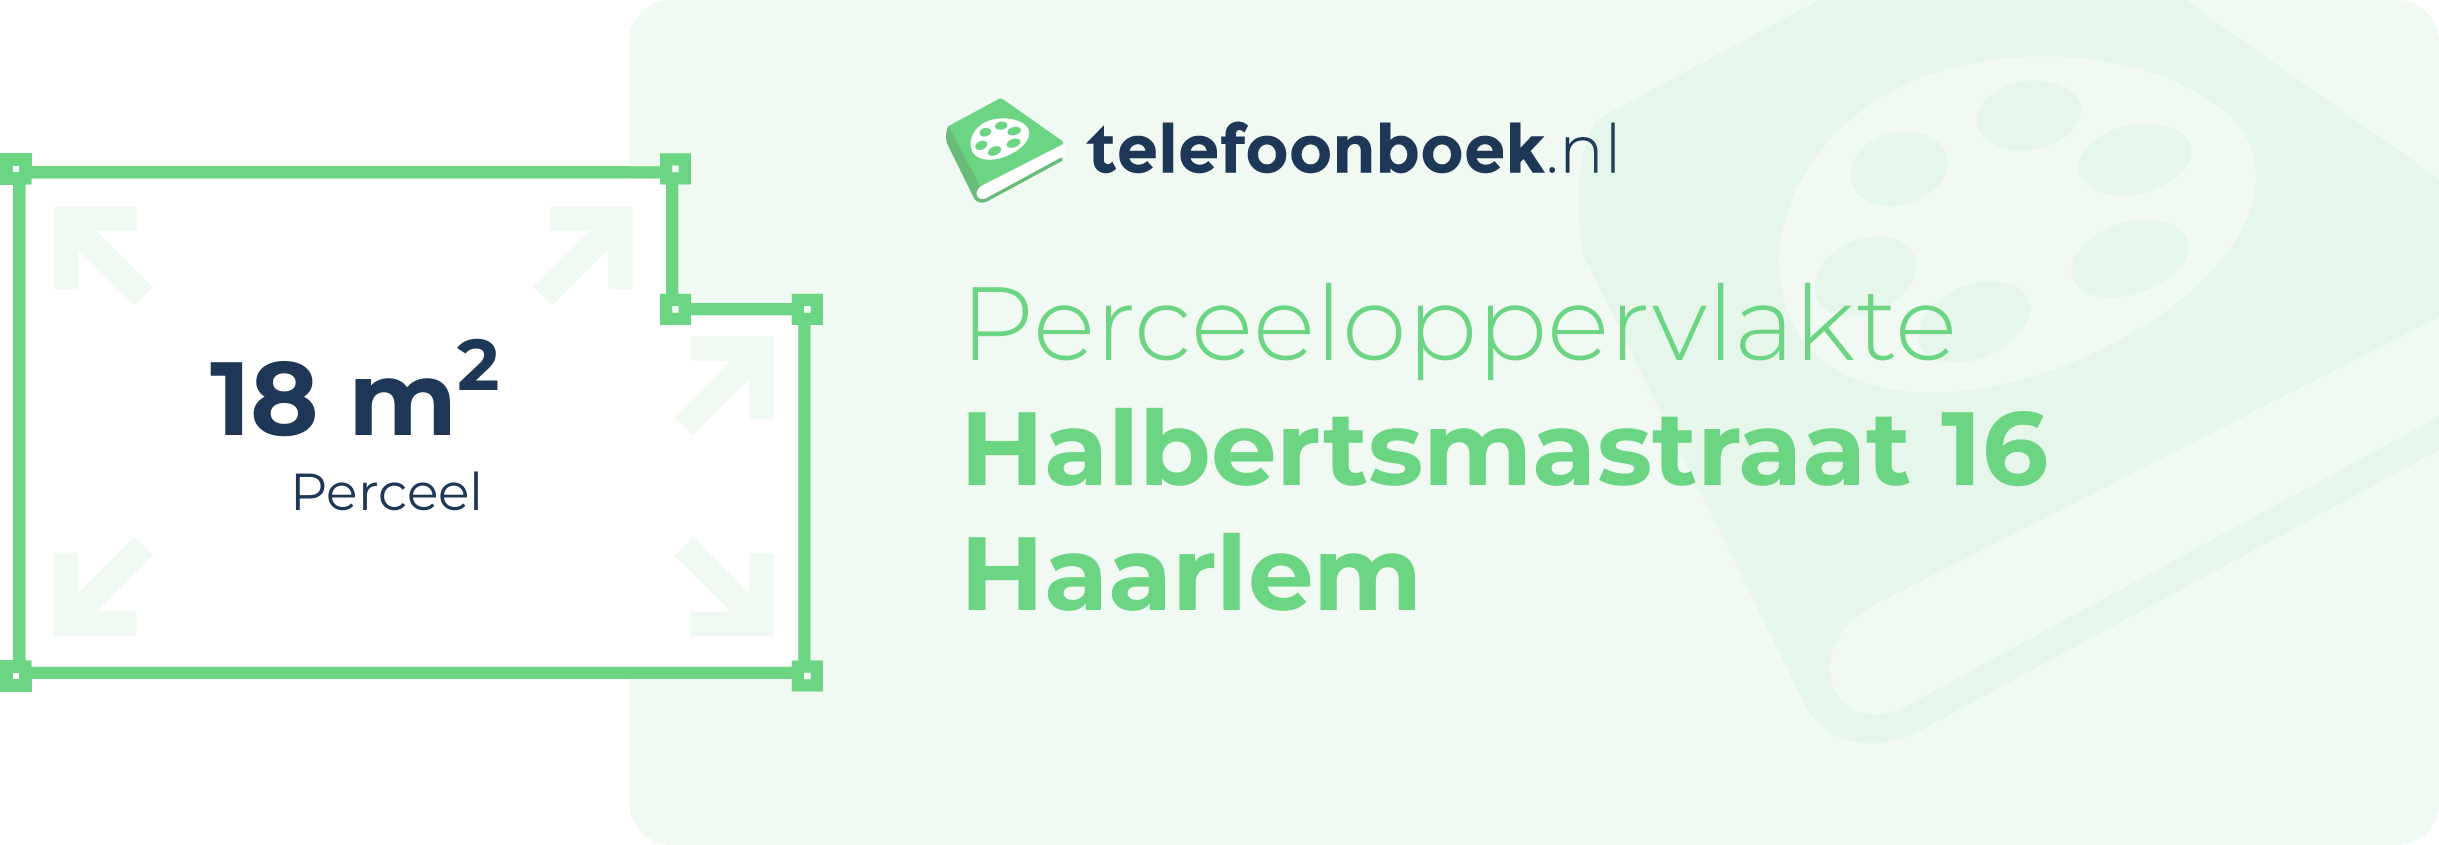 Perceeloppervlakte Halbertsmastraat 16 Haarlem